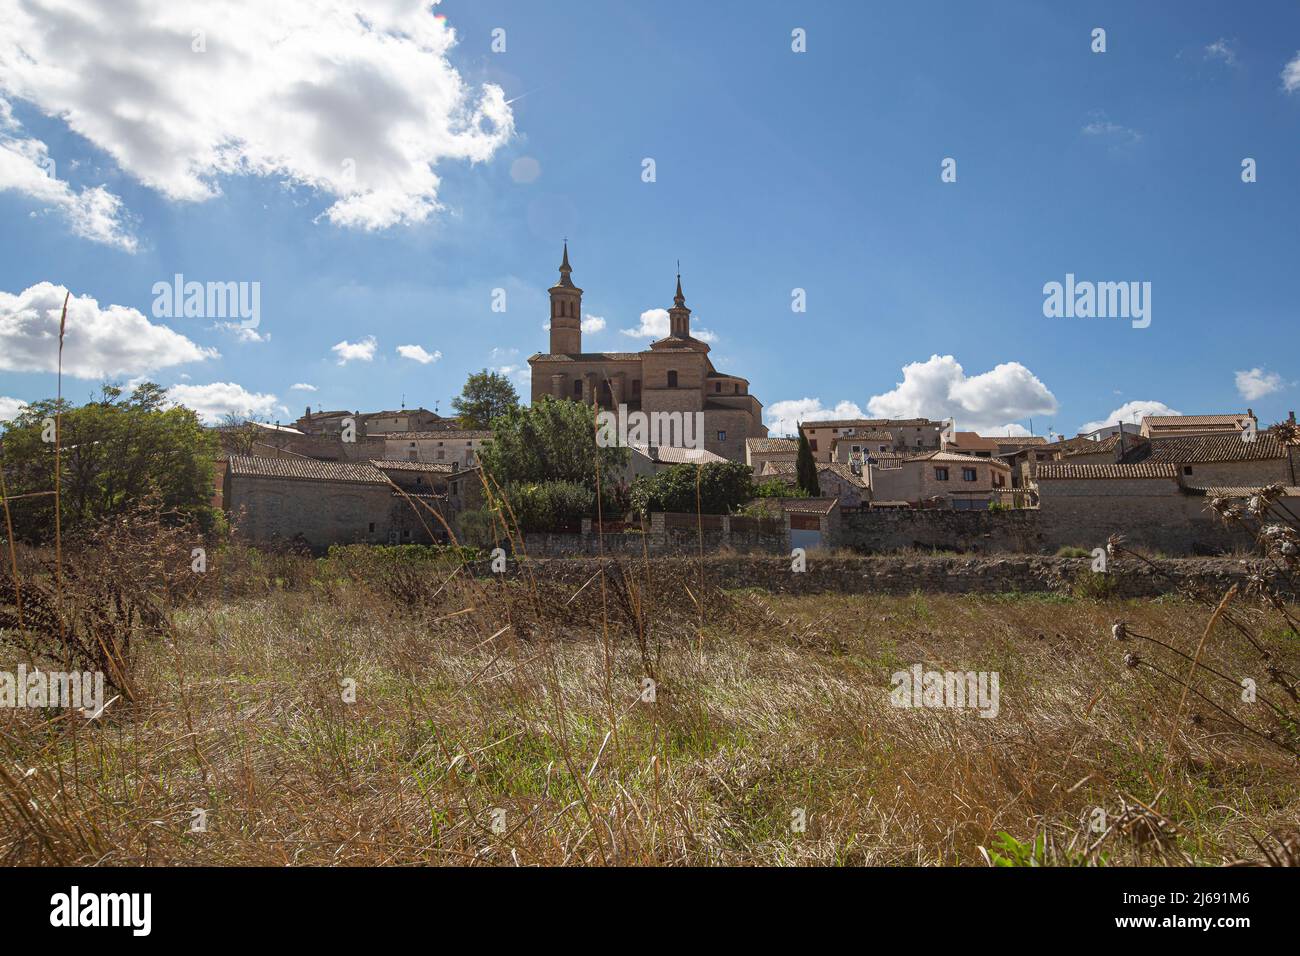 Landschaft der Stadt Fuendetodos, Geburtsort des spanischen Malers Francisco De Goya, Provinz Zaragoza, Autonome Gemeinschaft Aragon, Spanien Stockfoto